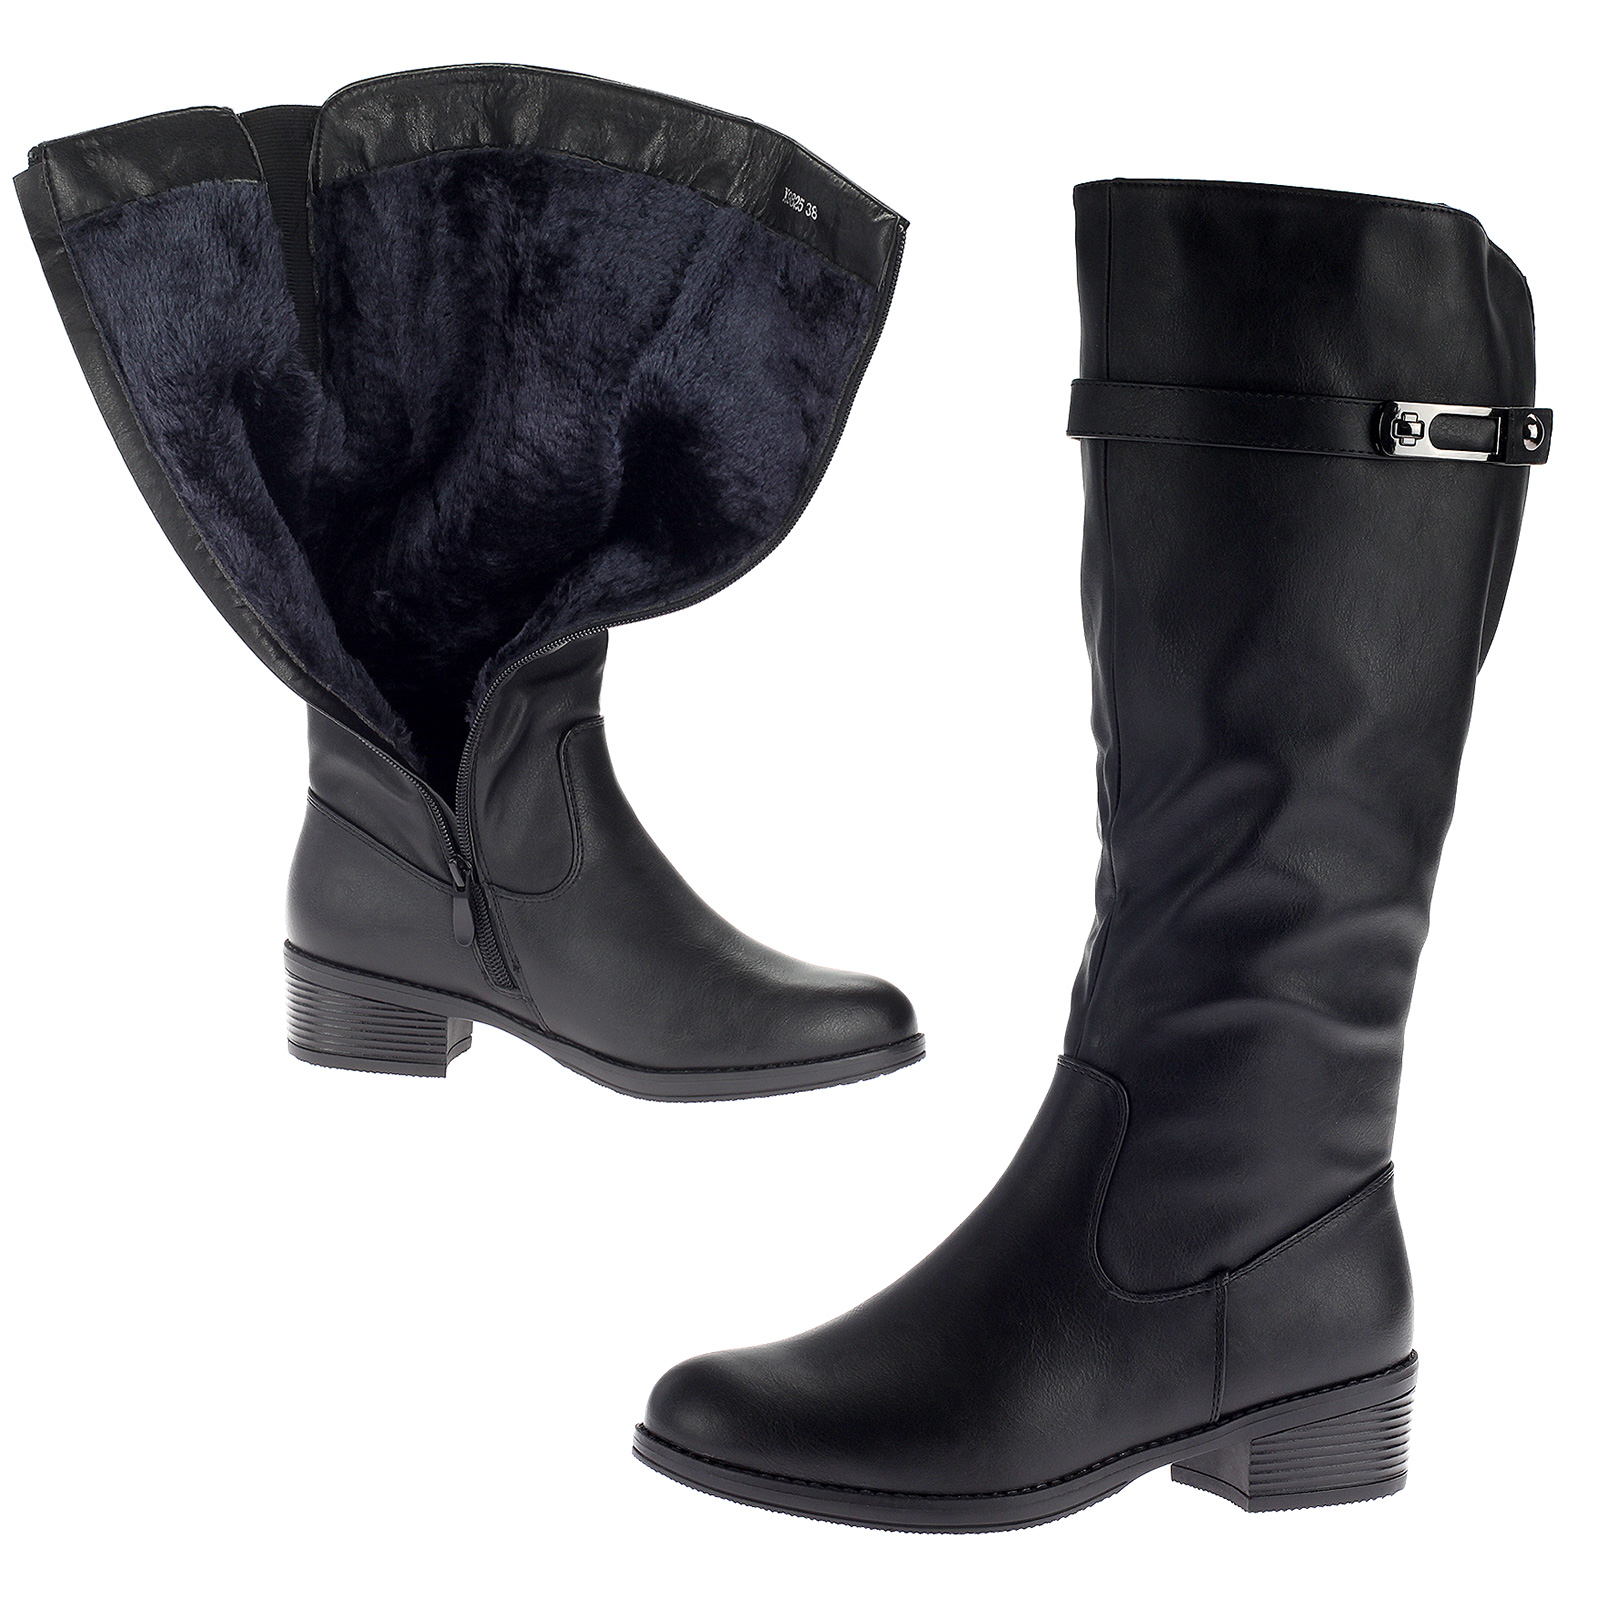 Damen Stiefel Winterstiefel Boot Warm Gefüttert Leder-Optik Schuhe Schwarz X9825-black